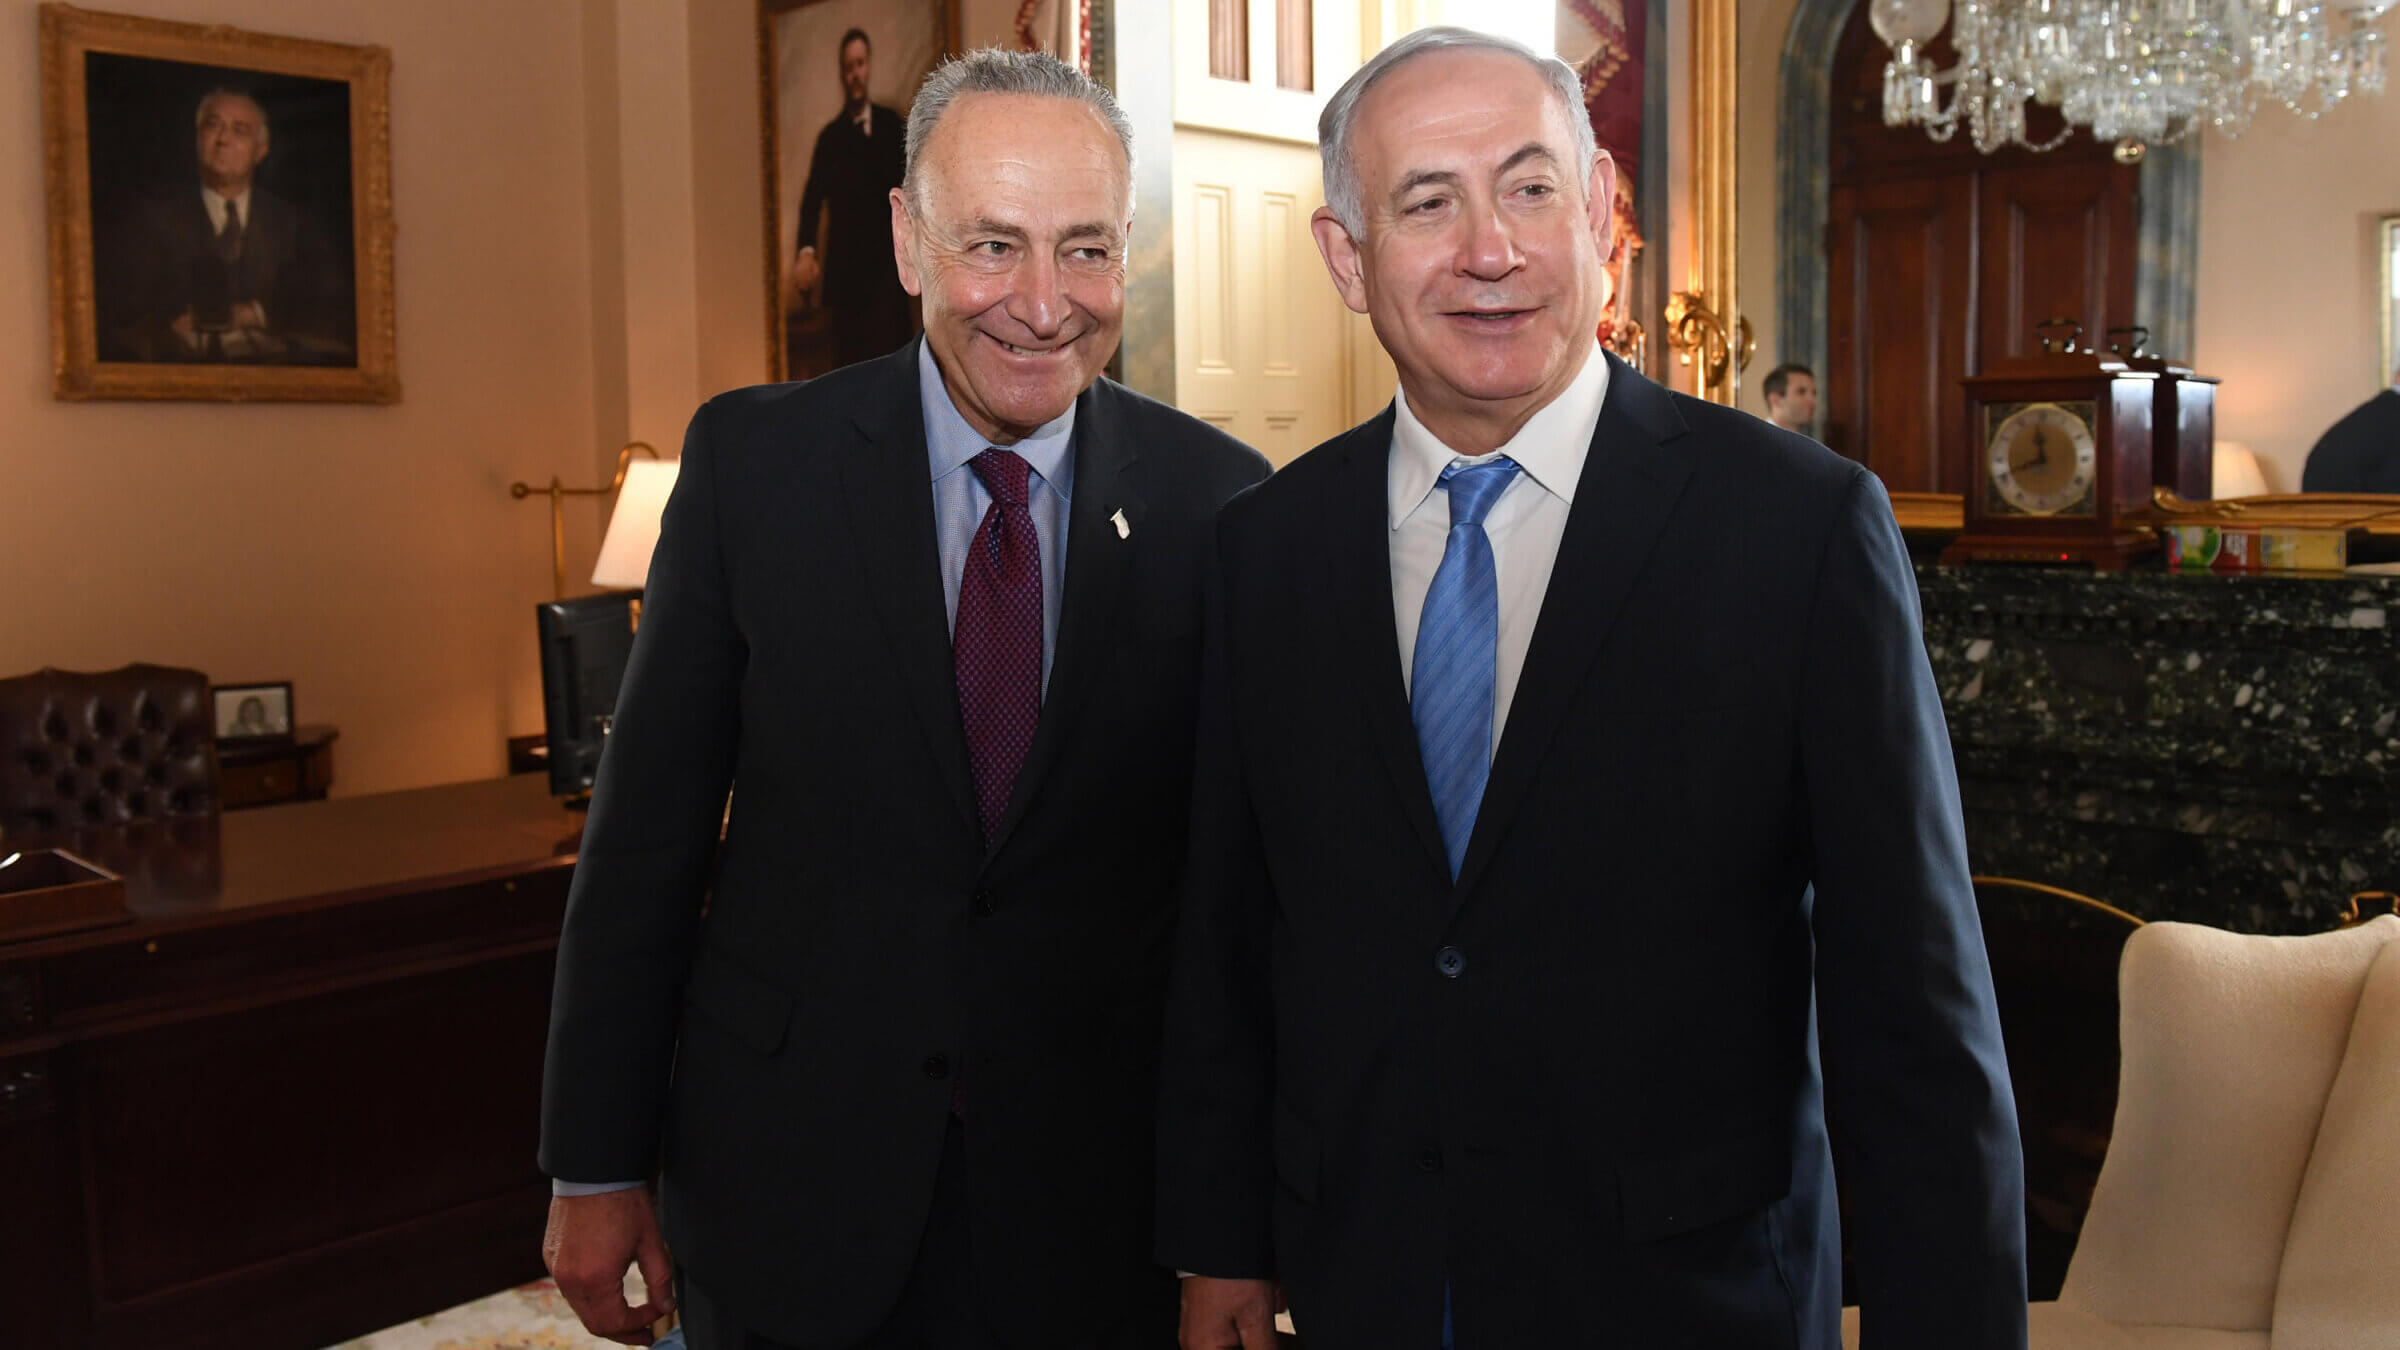 Sen. Chuck Schumer, left, with Israel's then-Prime Minister Benjamin Netanyahu, in 2018.